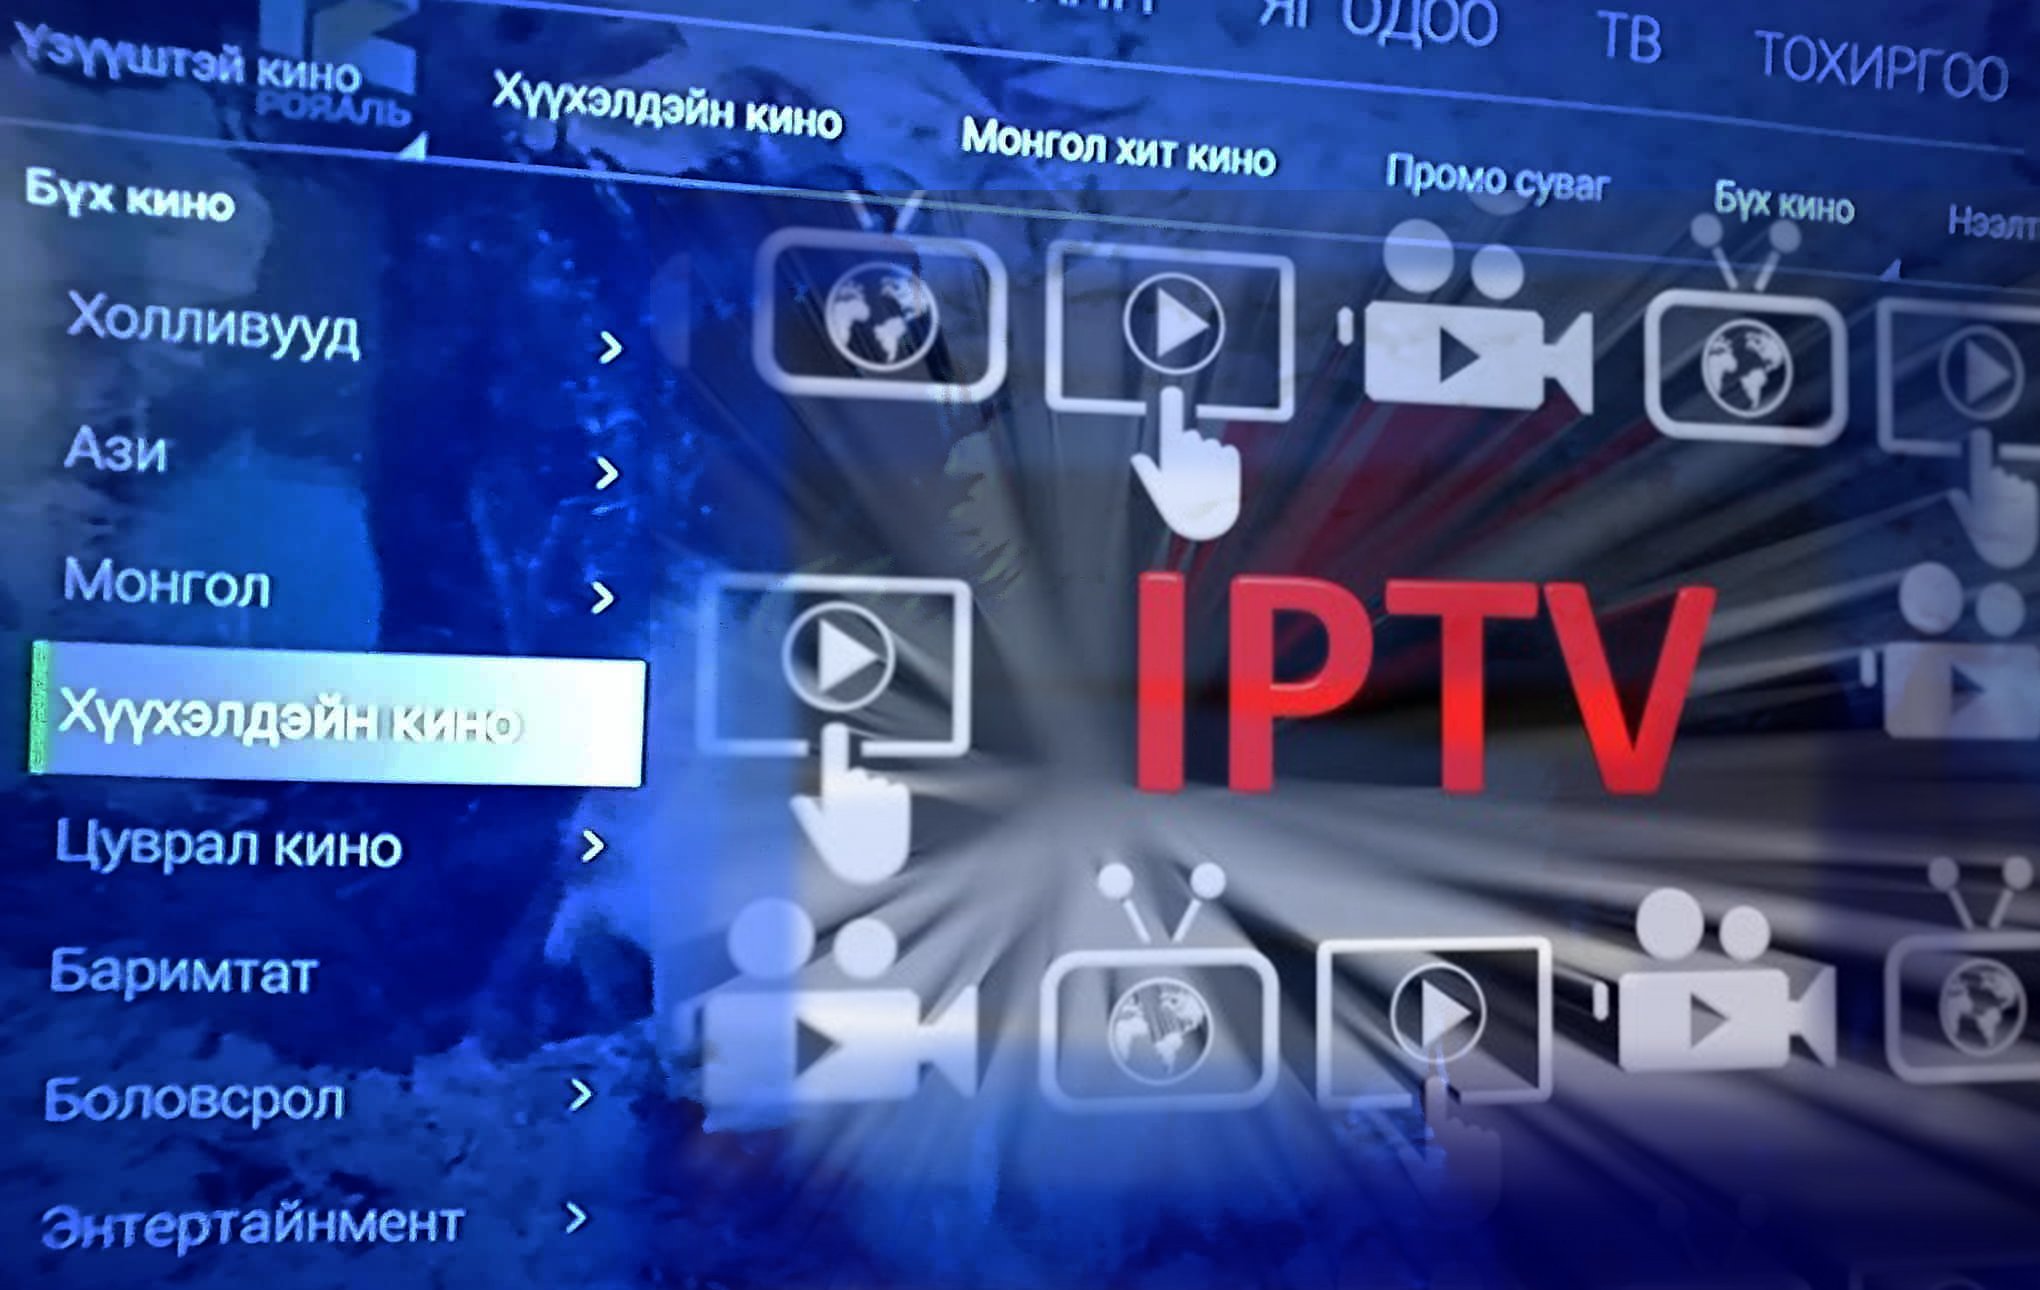 IPTV-үүдийн хүүхэд, гэр бүлийн киног үнэгүй болгох тухай хүсэлт илгээжээ